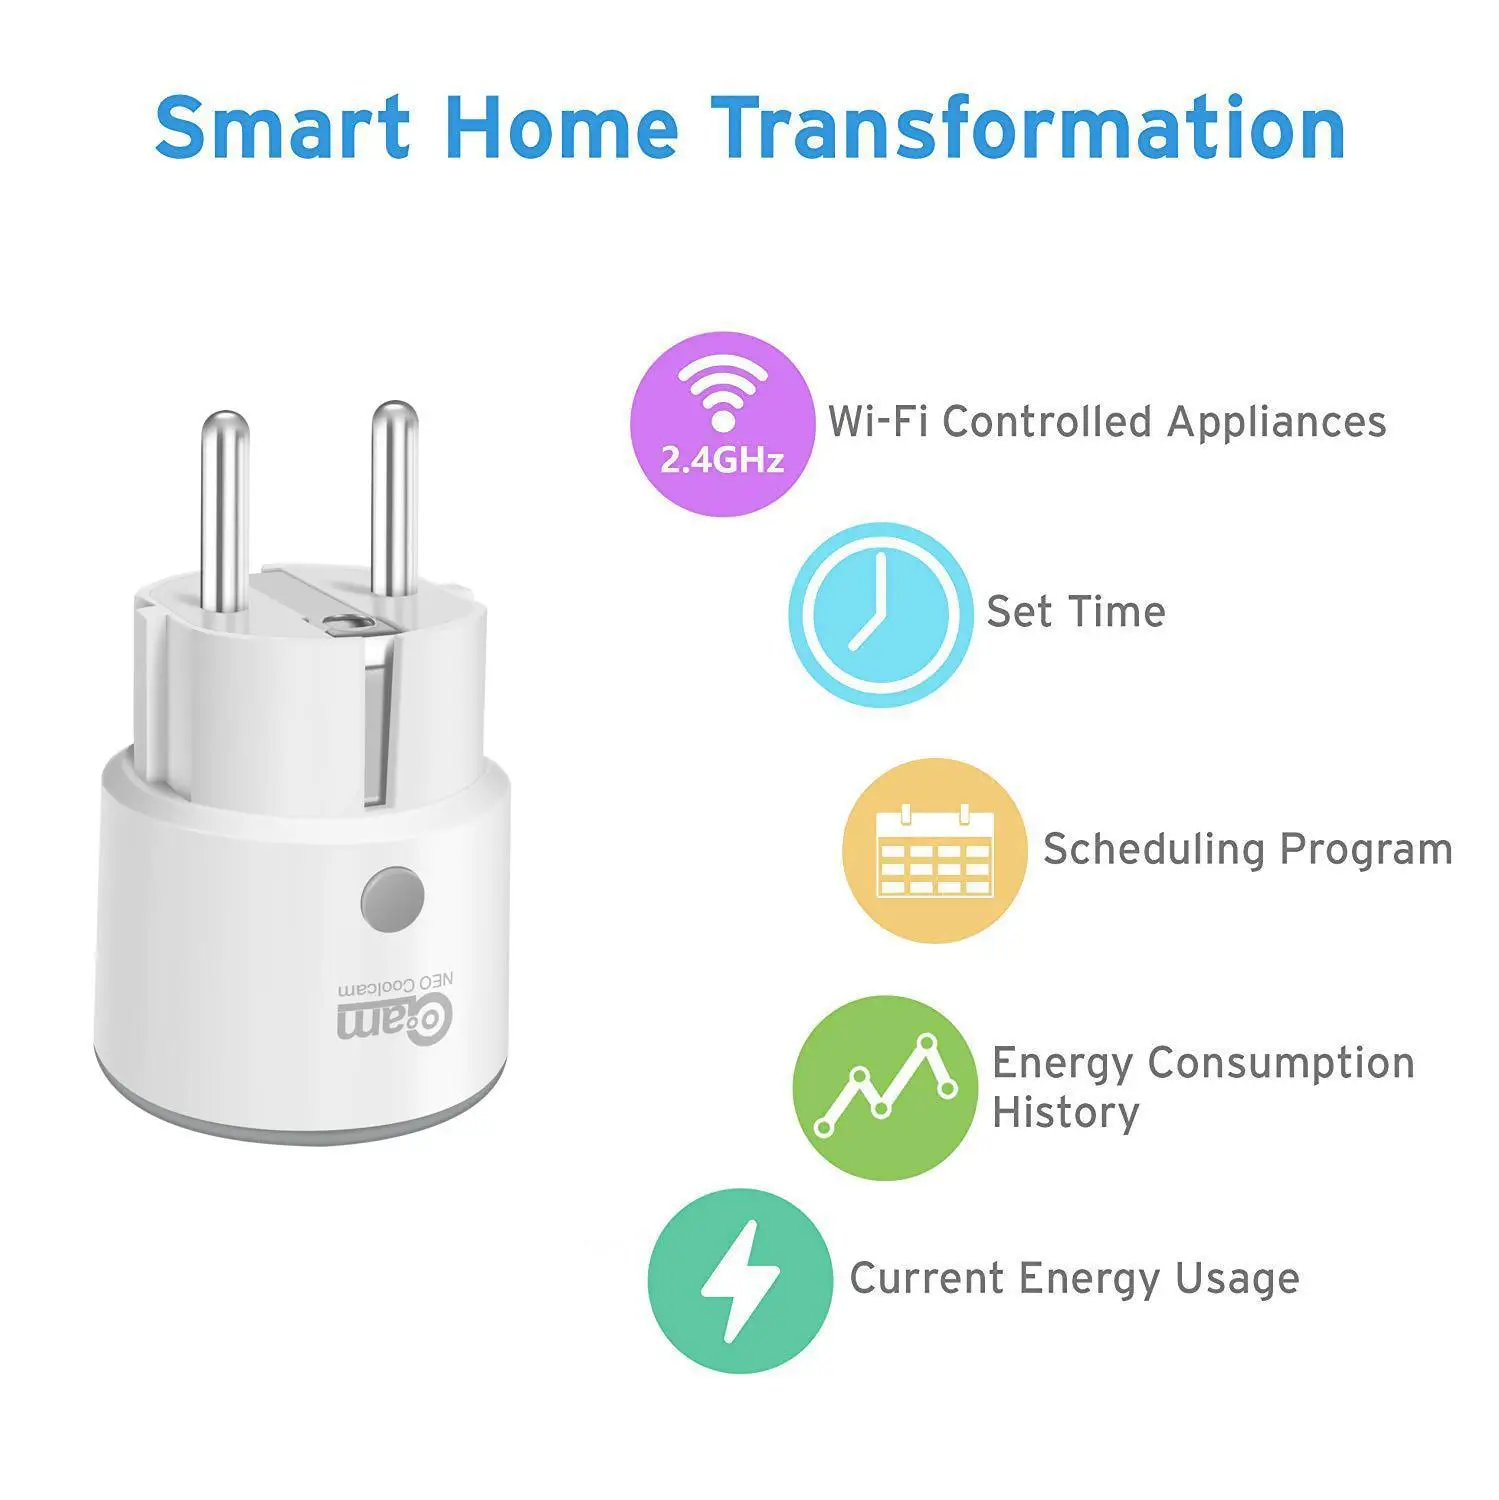 NEO Coolcam Франция Smart Plug Поддержка Alexa Google Home IFTTT удаленного Управление переключатель